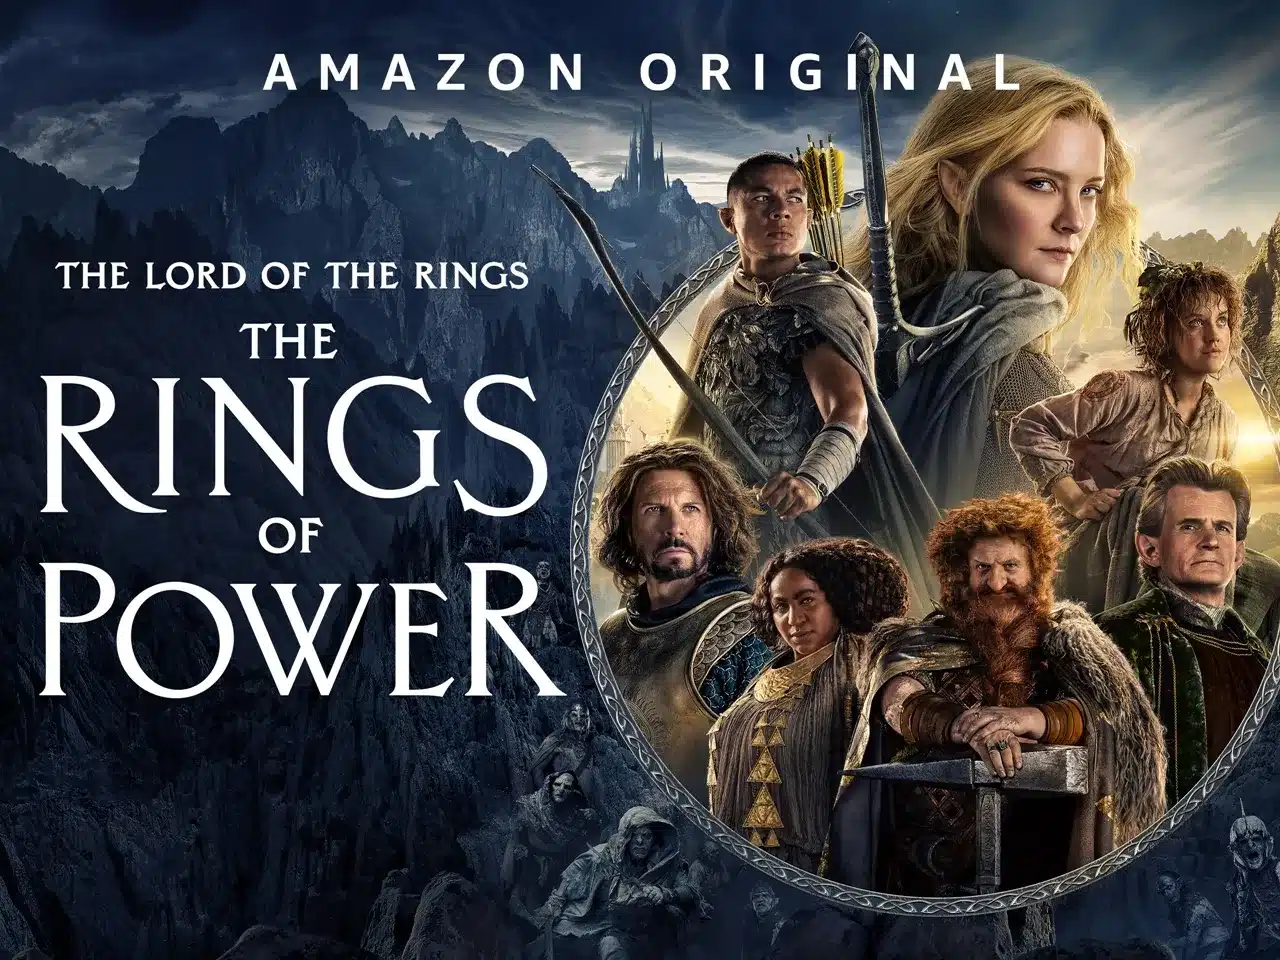 เดอะลอร์ดออฟเดอะริงส์ - แหวนแห่งอำนาจ The Lord of the Rings: The Rings of Power Season 1 ซับไทย